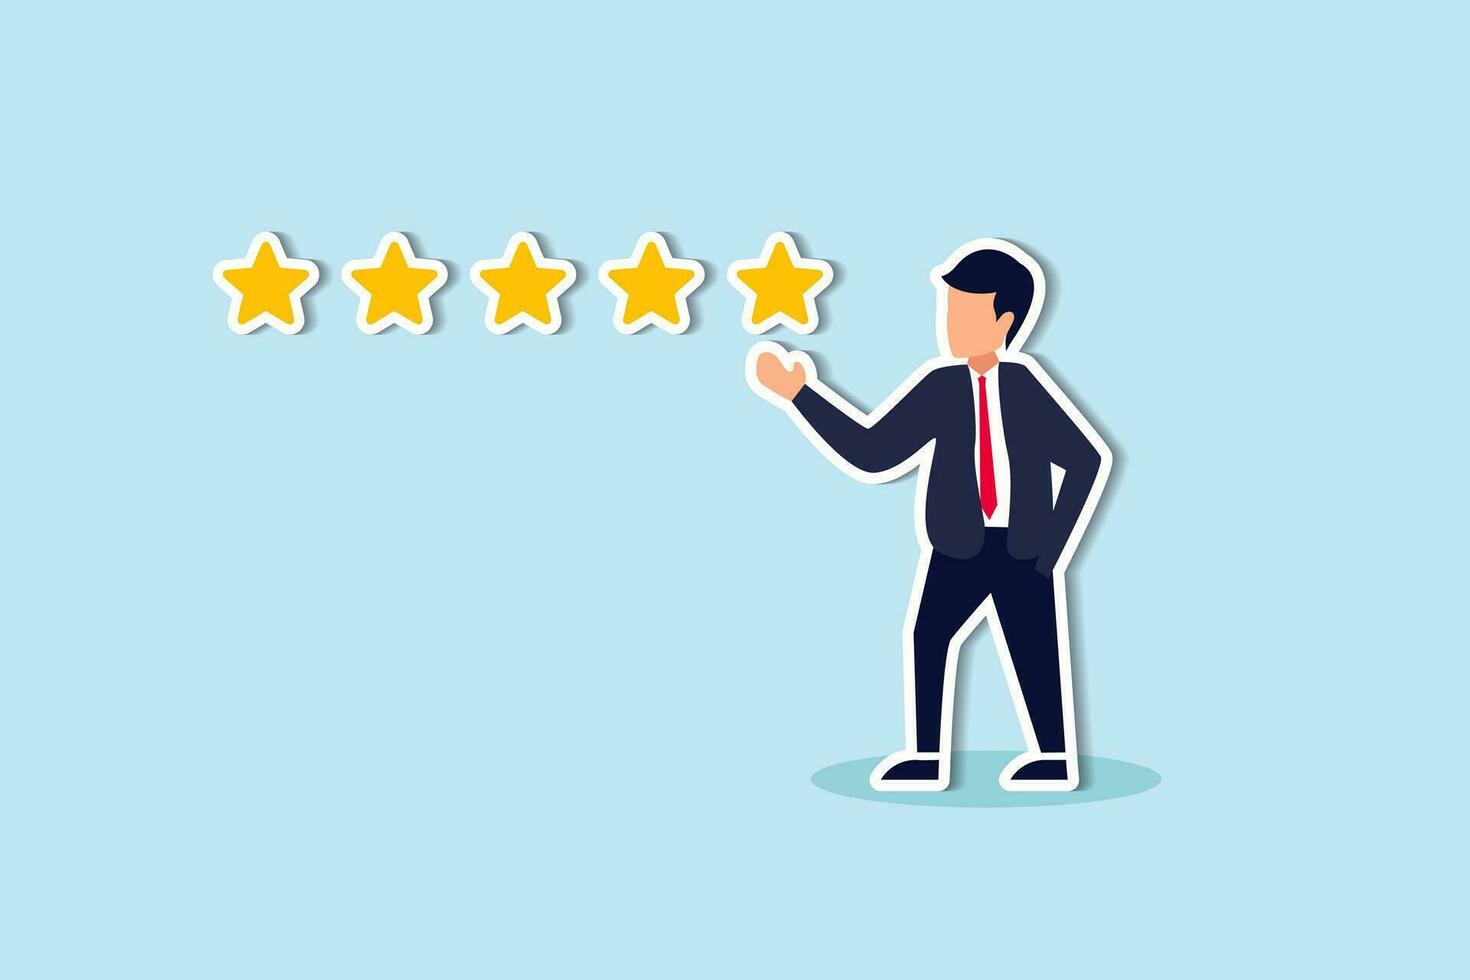 feedback van klanten 5 sterren rating, beste kwaliteit, excellentie high performance evaluatie, positieve ranking of zakelijke reputatie en tevredenheidsconcept, vertrouwen zakenman die 5 sterren rating geeft. vector